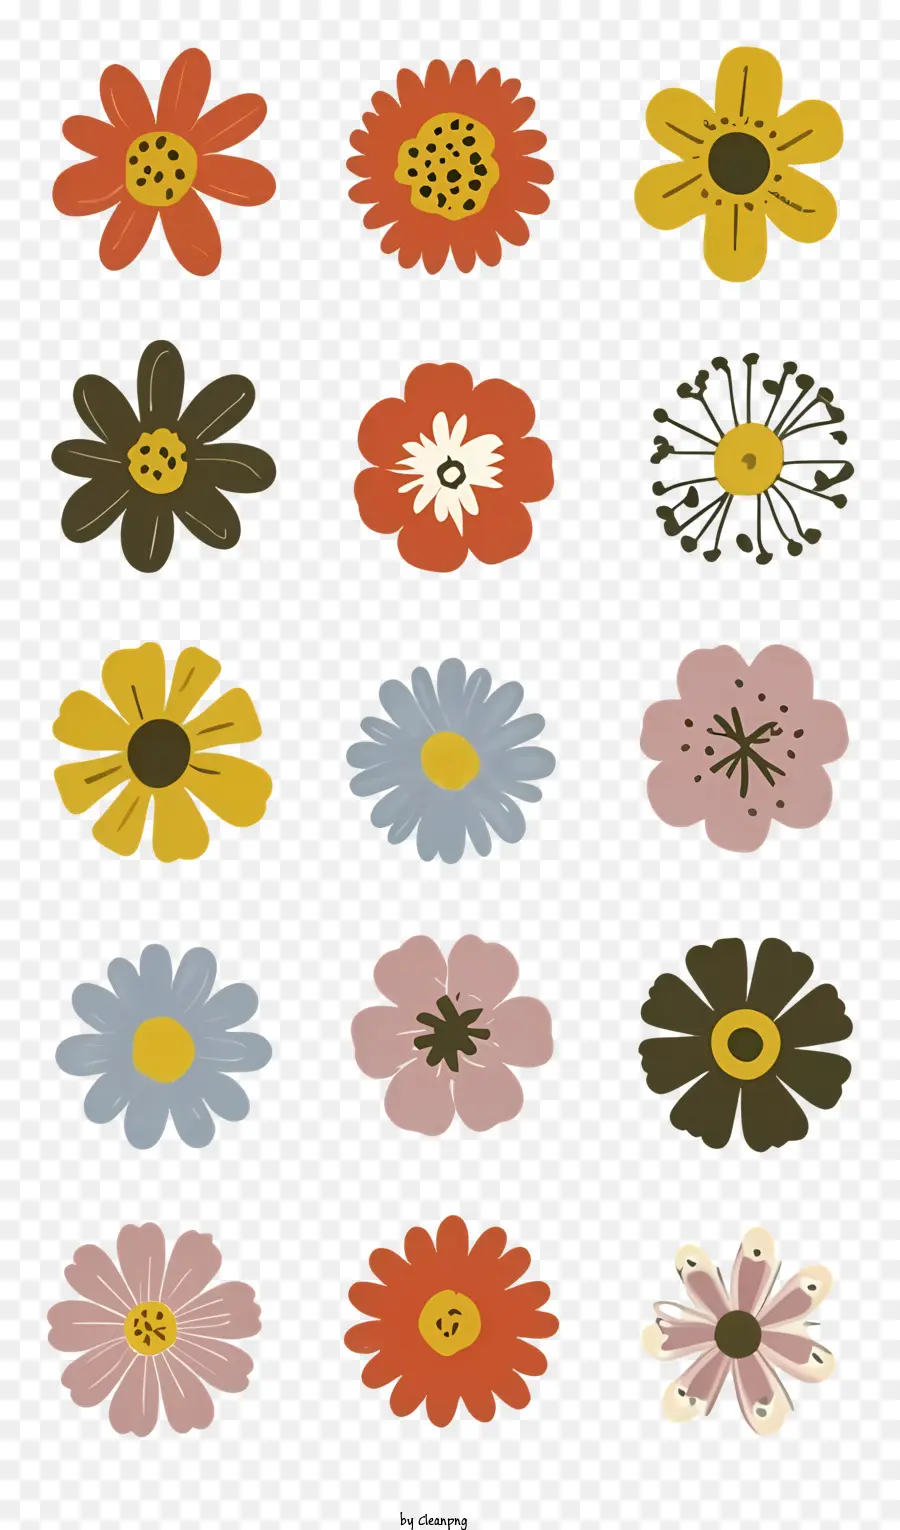 Gesteck - Gruppe von bunten Blumen in kreisförmiger Anordnung